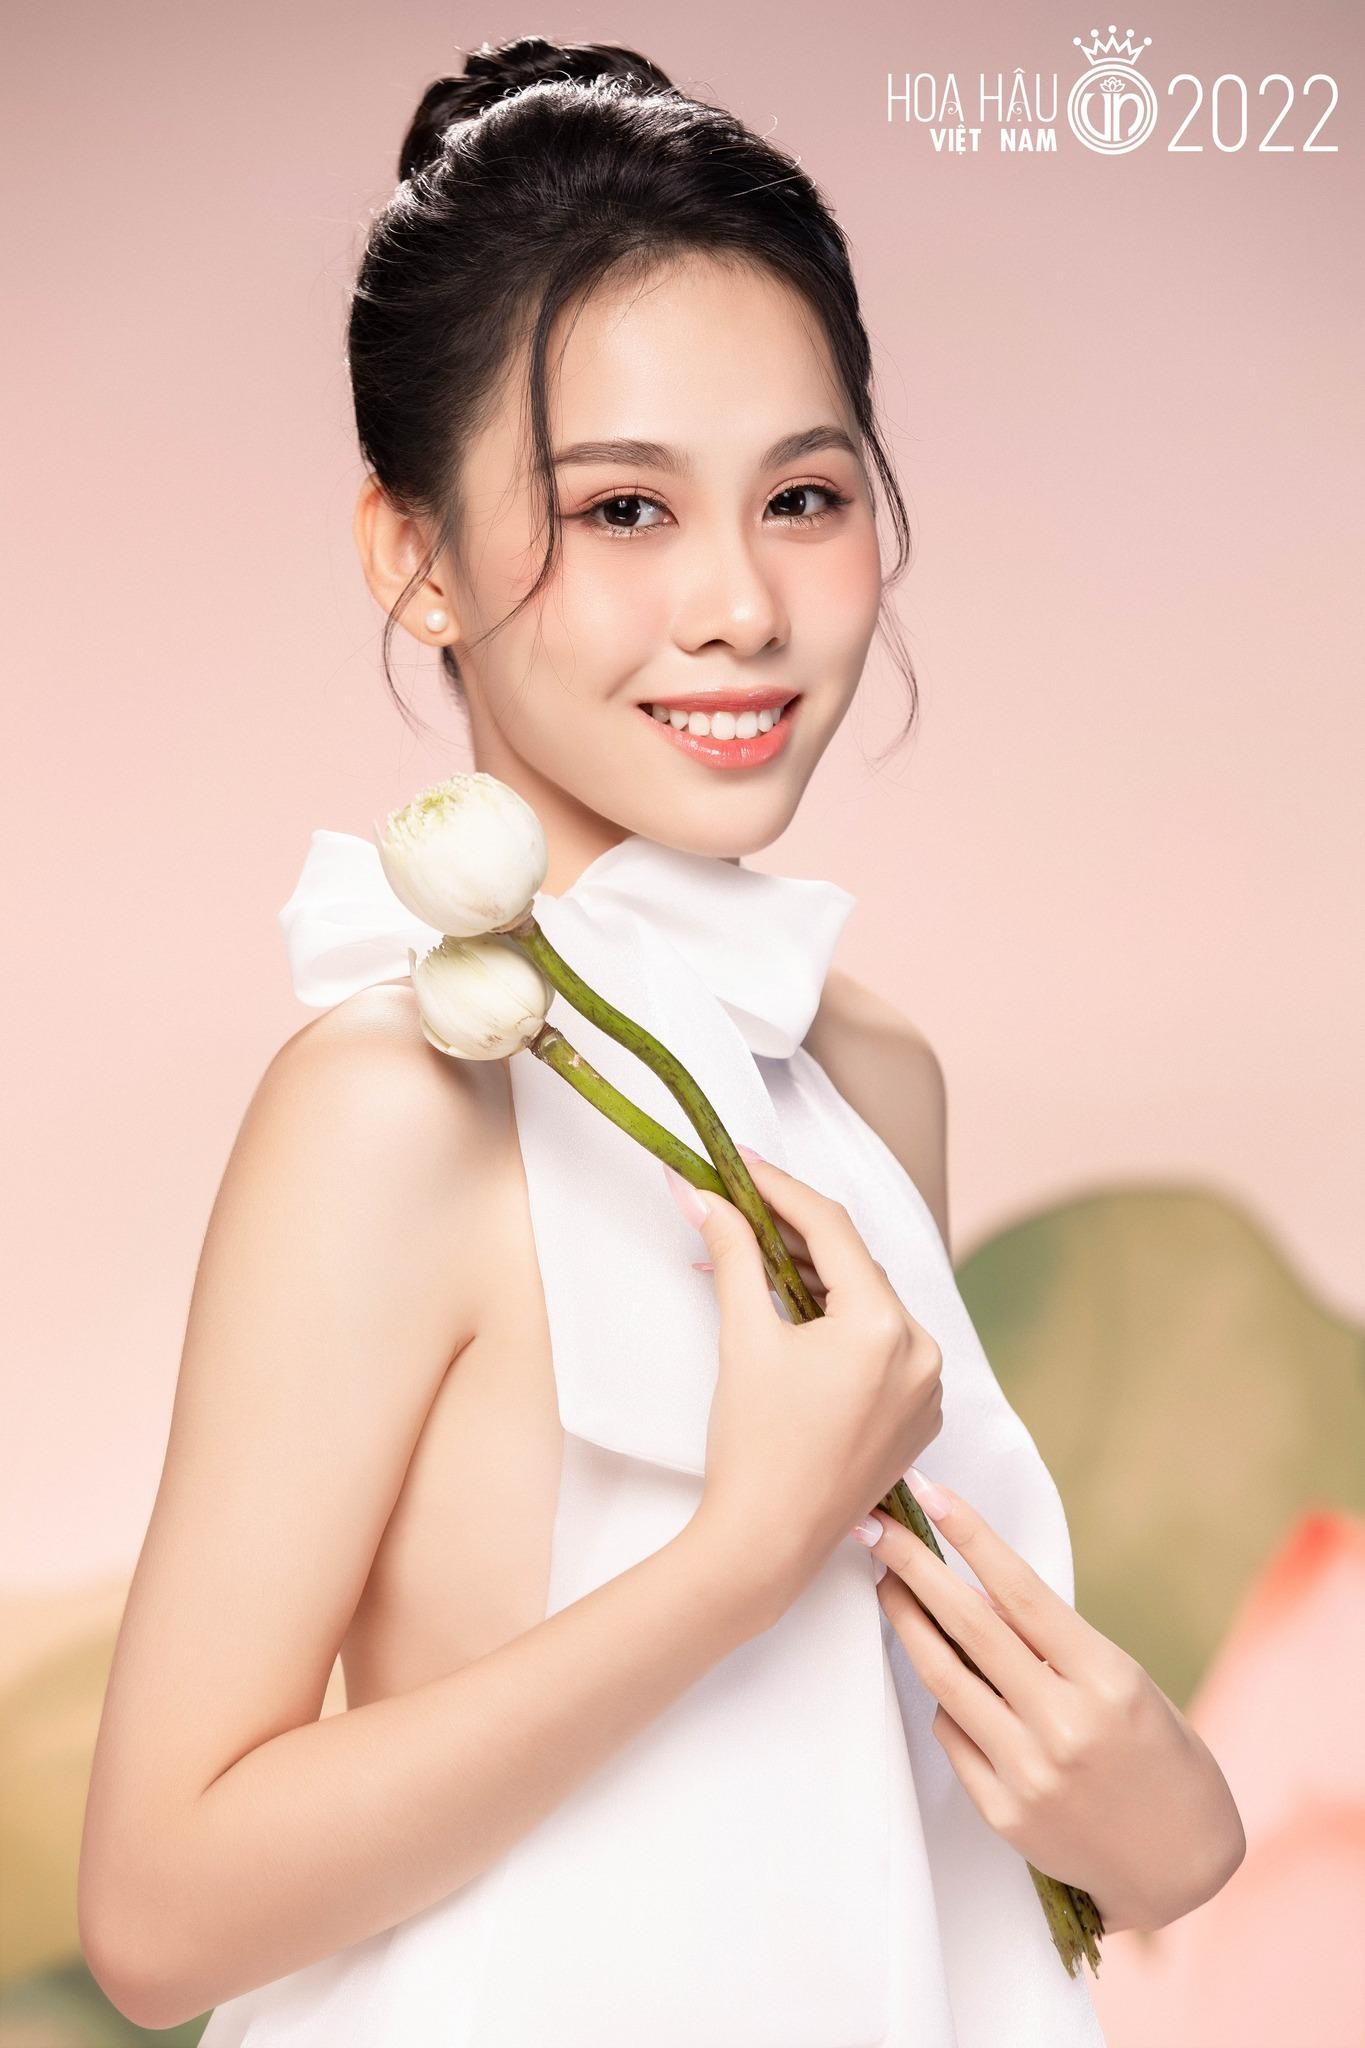 Nhan sắc cận của thí sinh Hoa hậu Việt Nam 2022 - Ảnh 5.